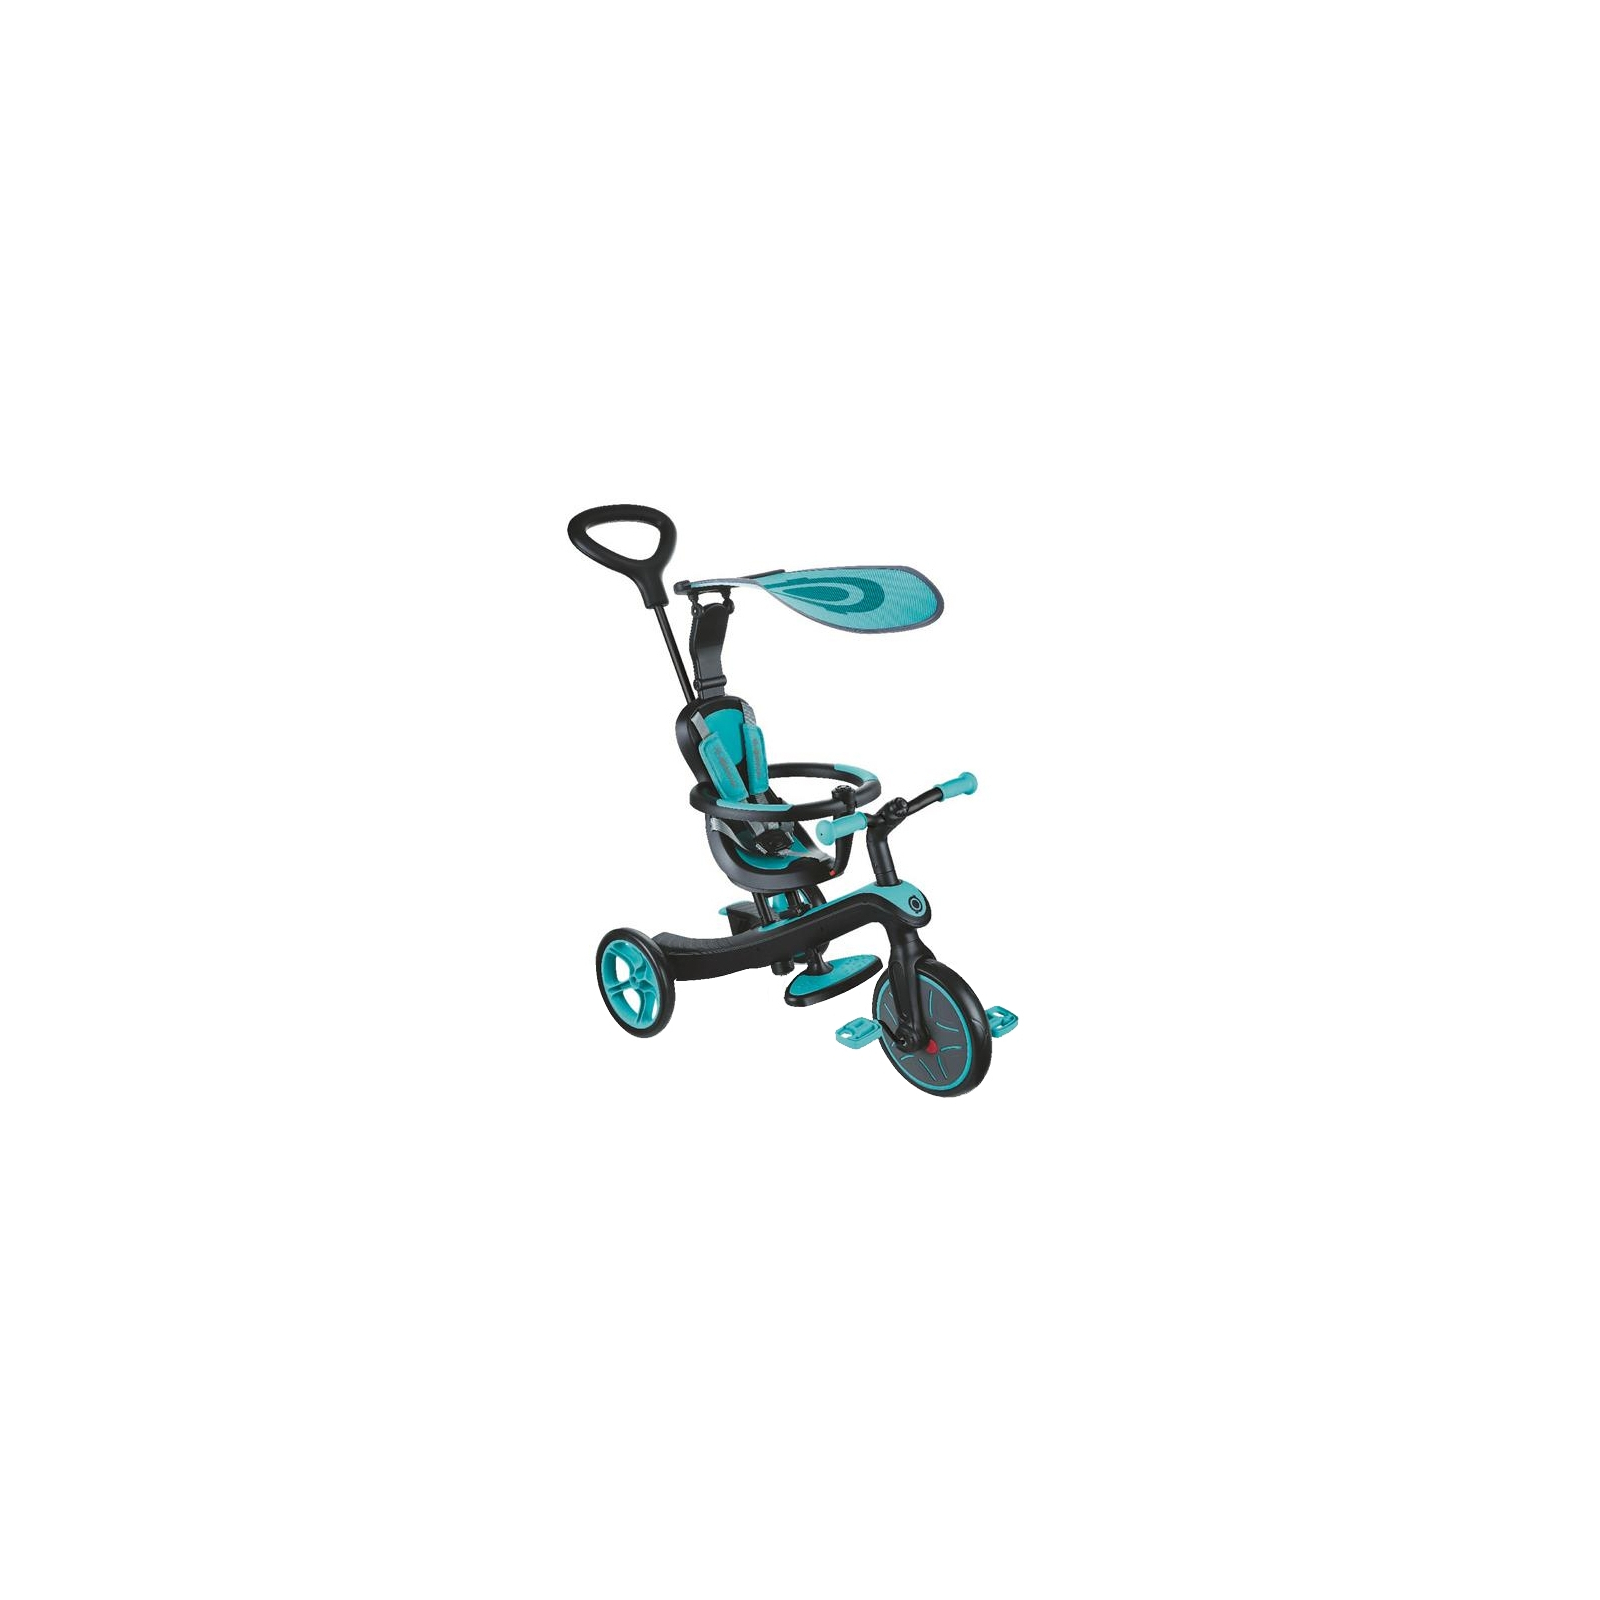 Дитячий велосипед Globber EXPLORER TRIKE 4в1 бірюзовий (632-105)